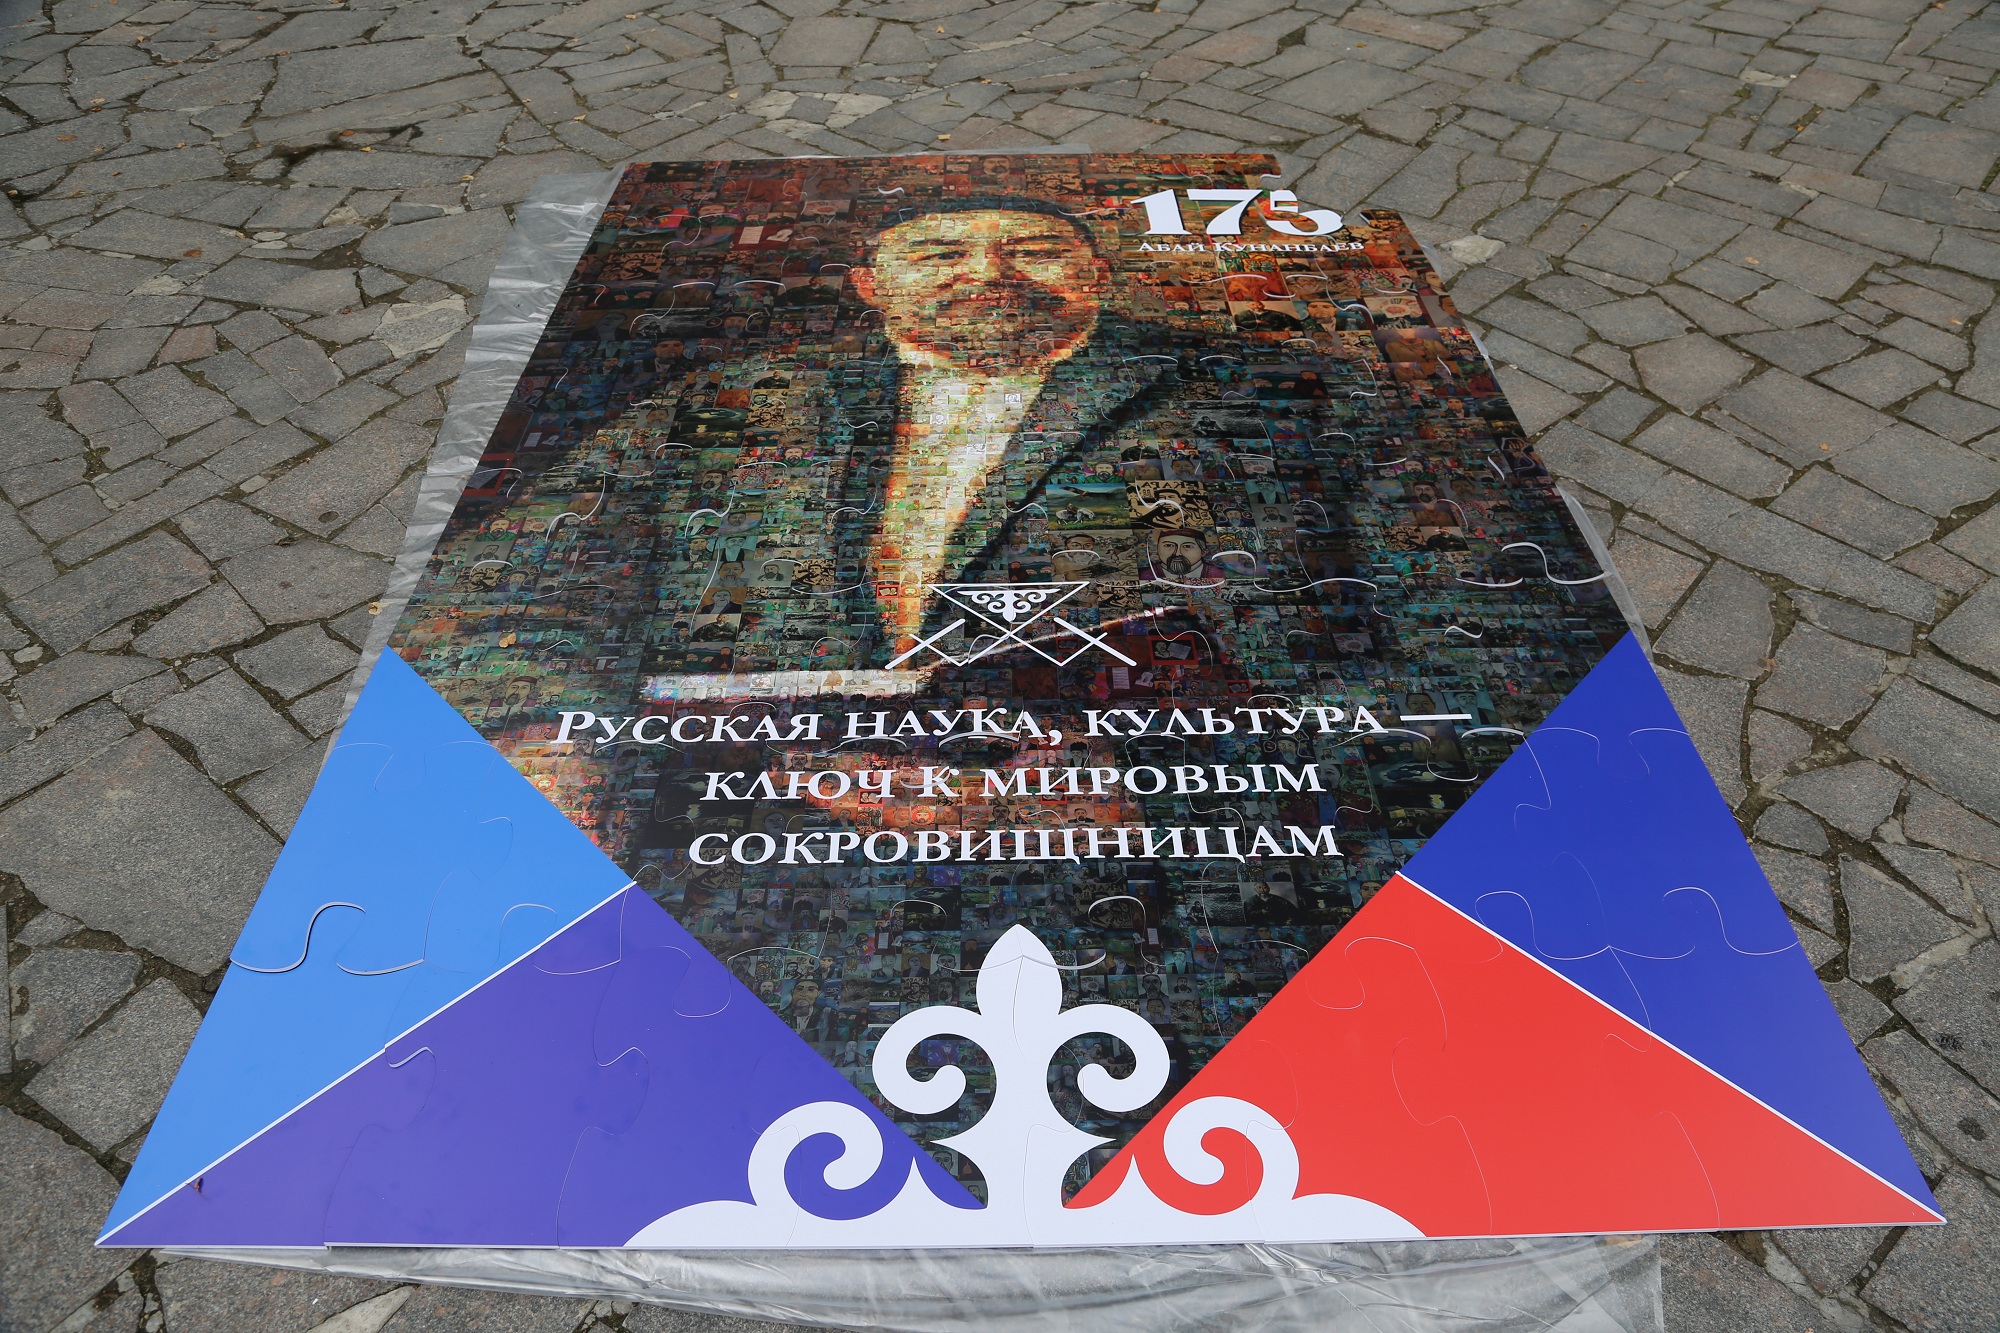 Оригинальную инсталляцию представили в Москве у памятника Абаю